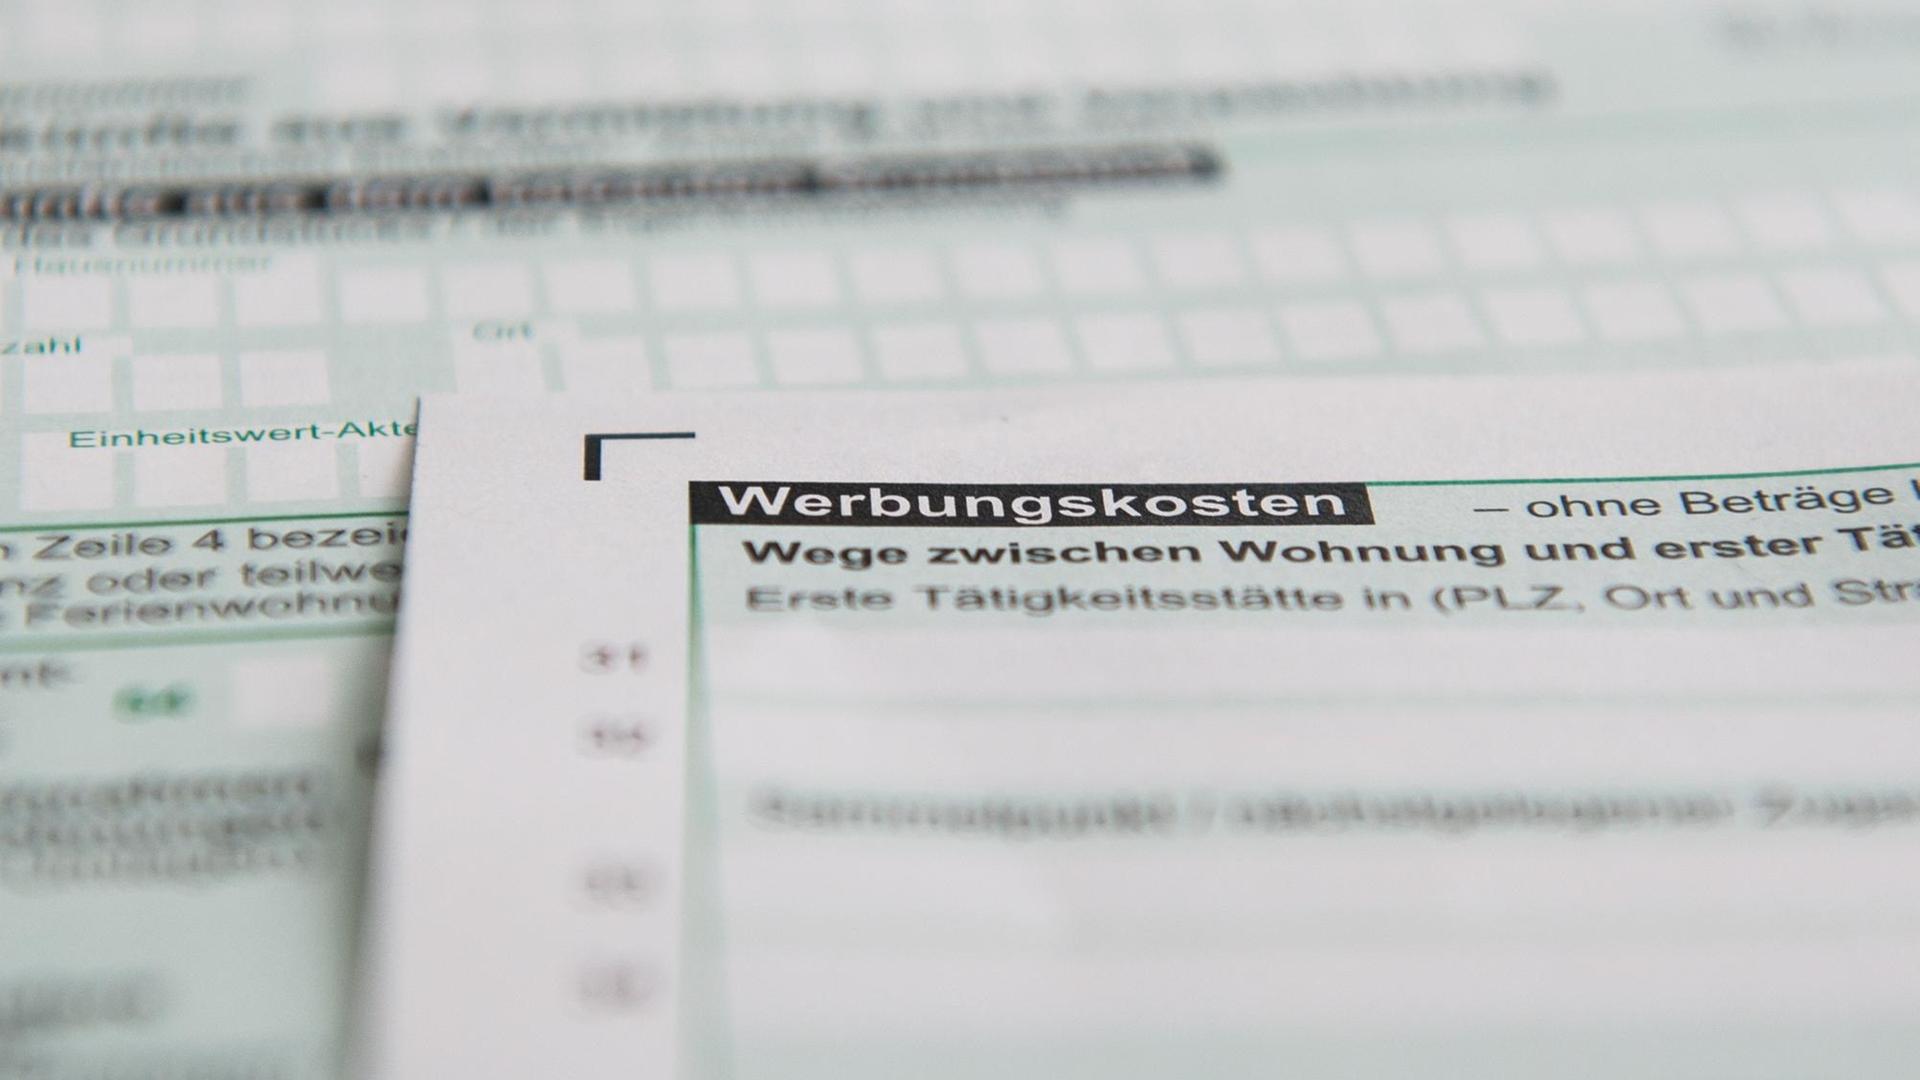 ILLUSTRATION - Steuerformular fuer Werbungskosten aufgenommen am 27.02.2018 in Berlin (gestellte Szene). Foto: Robert Guenther | Verwendung weltweit